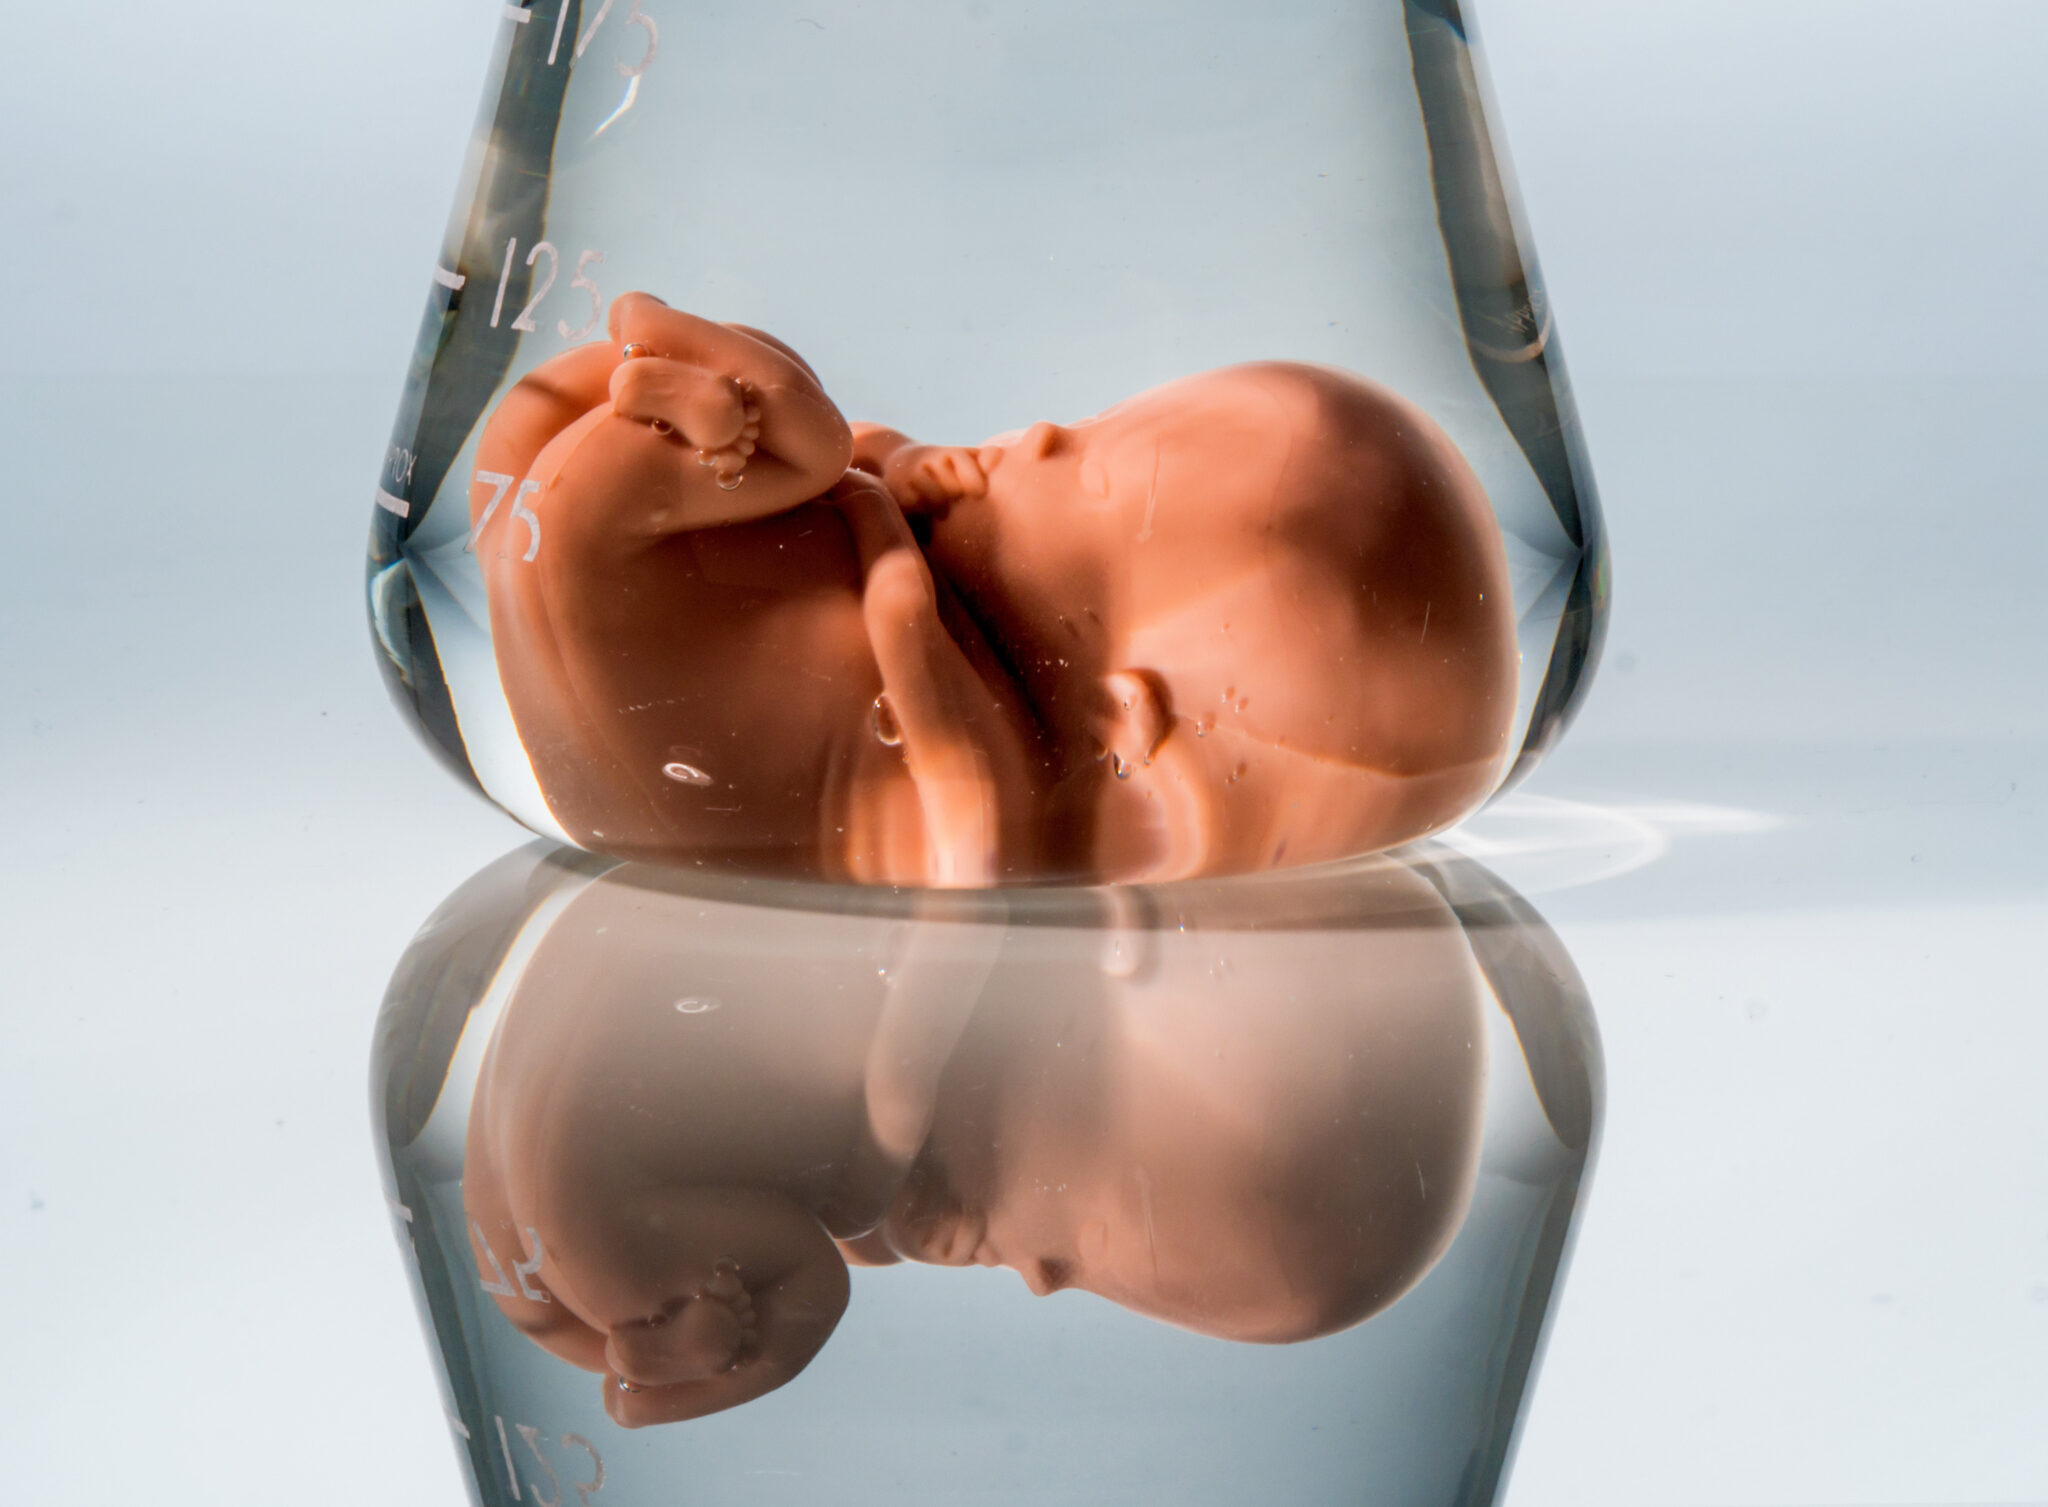 Birth first. Модифицирование человеческих эмбрионов. Генномодифицированные младенцы. Дети с отредактированным геномом.